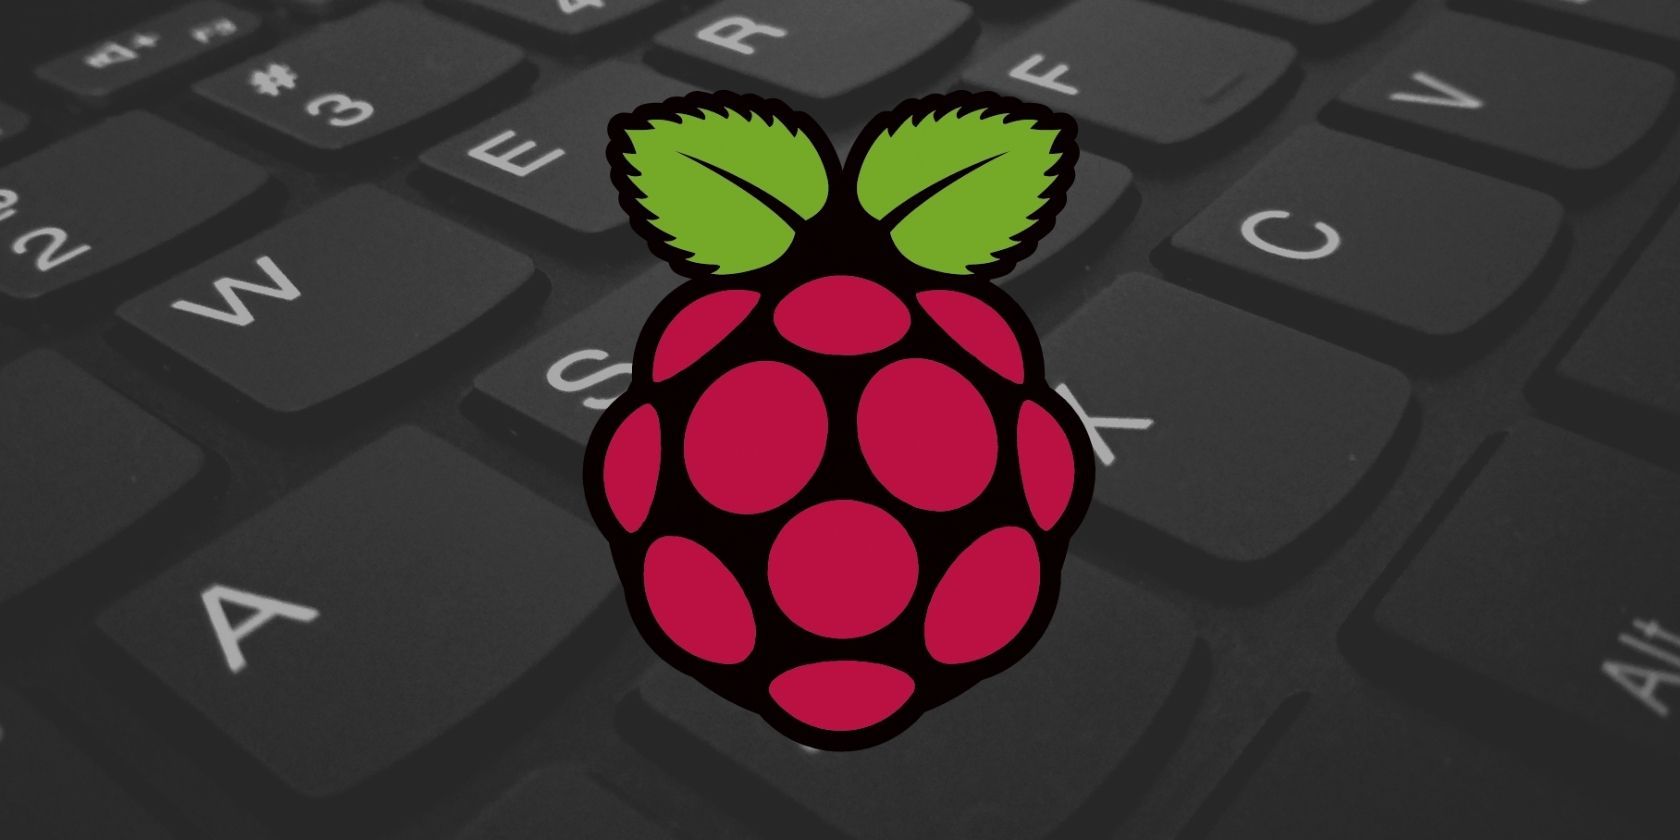 use my mac keyboard for raspberry pi